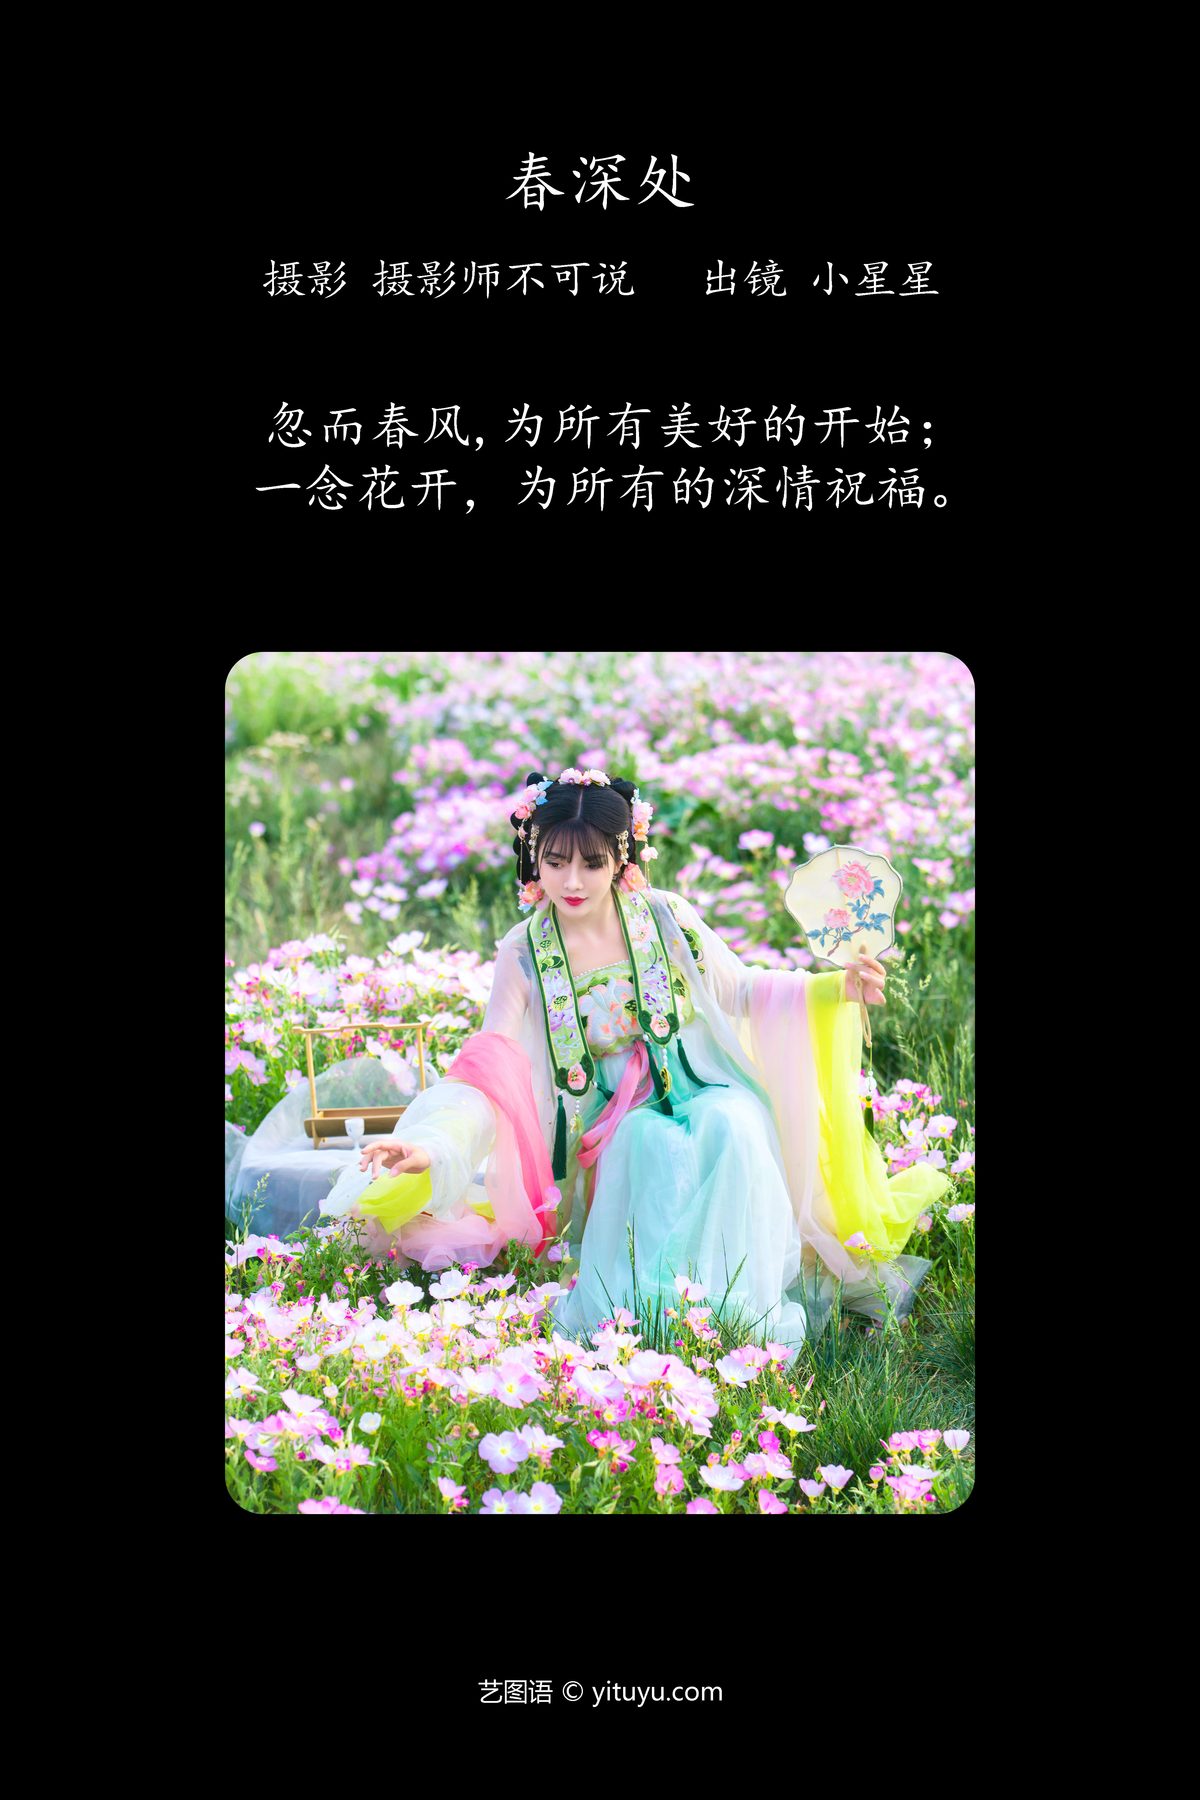 YiTuYu艺图语 Vol 4432 Xiao Xing Xing 0001 6920773937.jpg